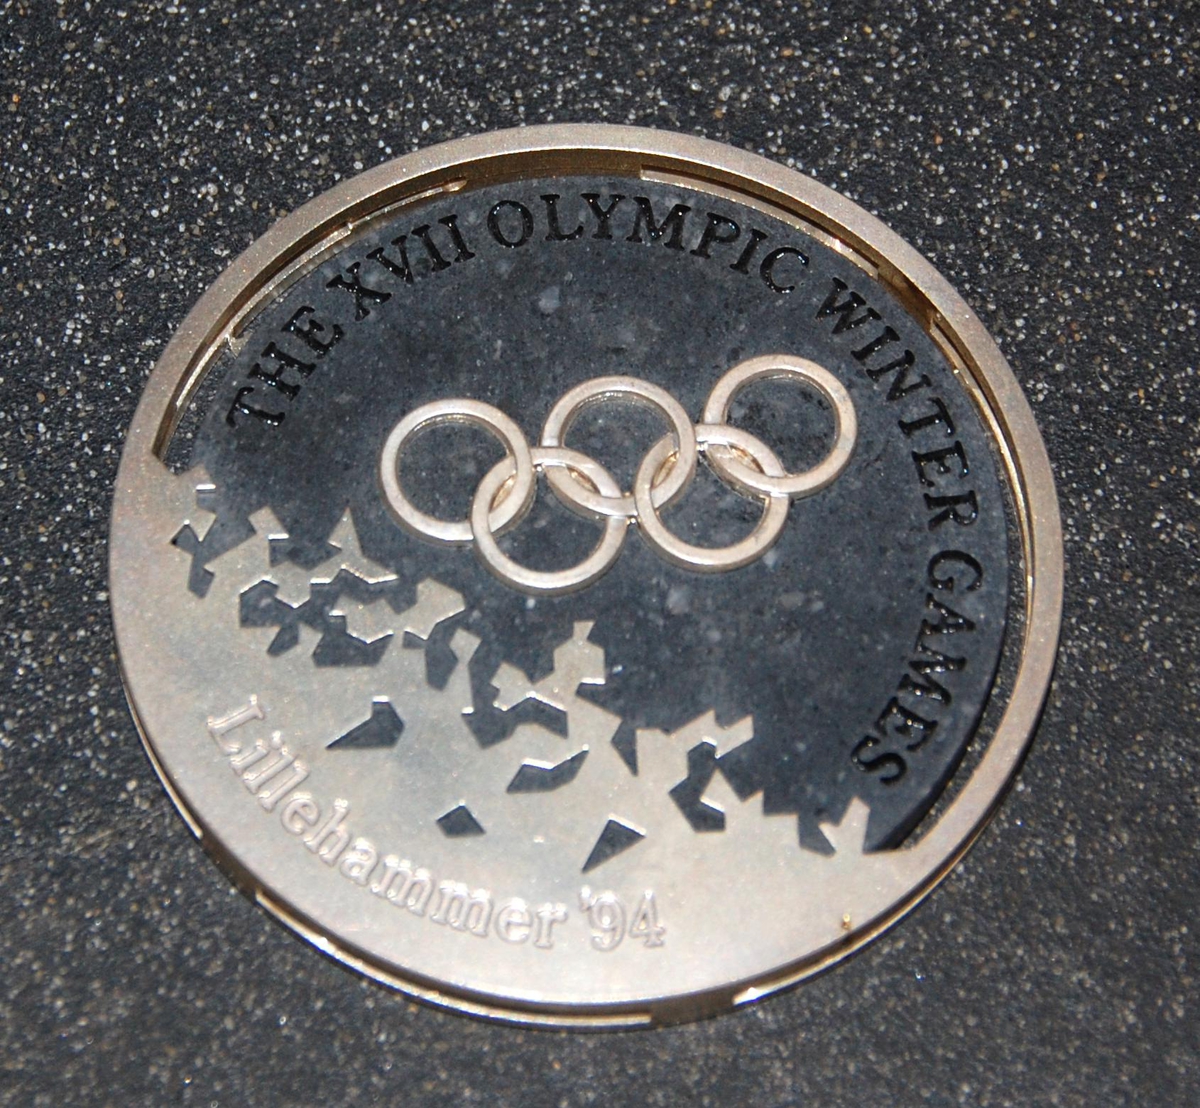 Medalje av metall og stein. På den ene siden er det motiv av de olympiske ringene over krystallmønster. På den andre siden er det piktogram av en skiløper og emblemet for de olympiske vinterleker på Lillehammer i 1994. Medaljen er plassert på et stativ av granitt.